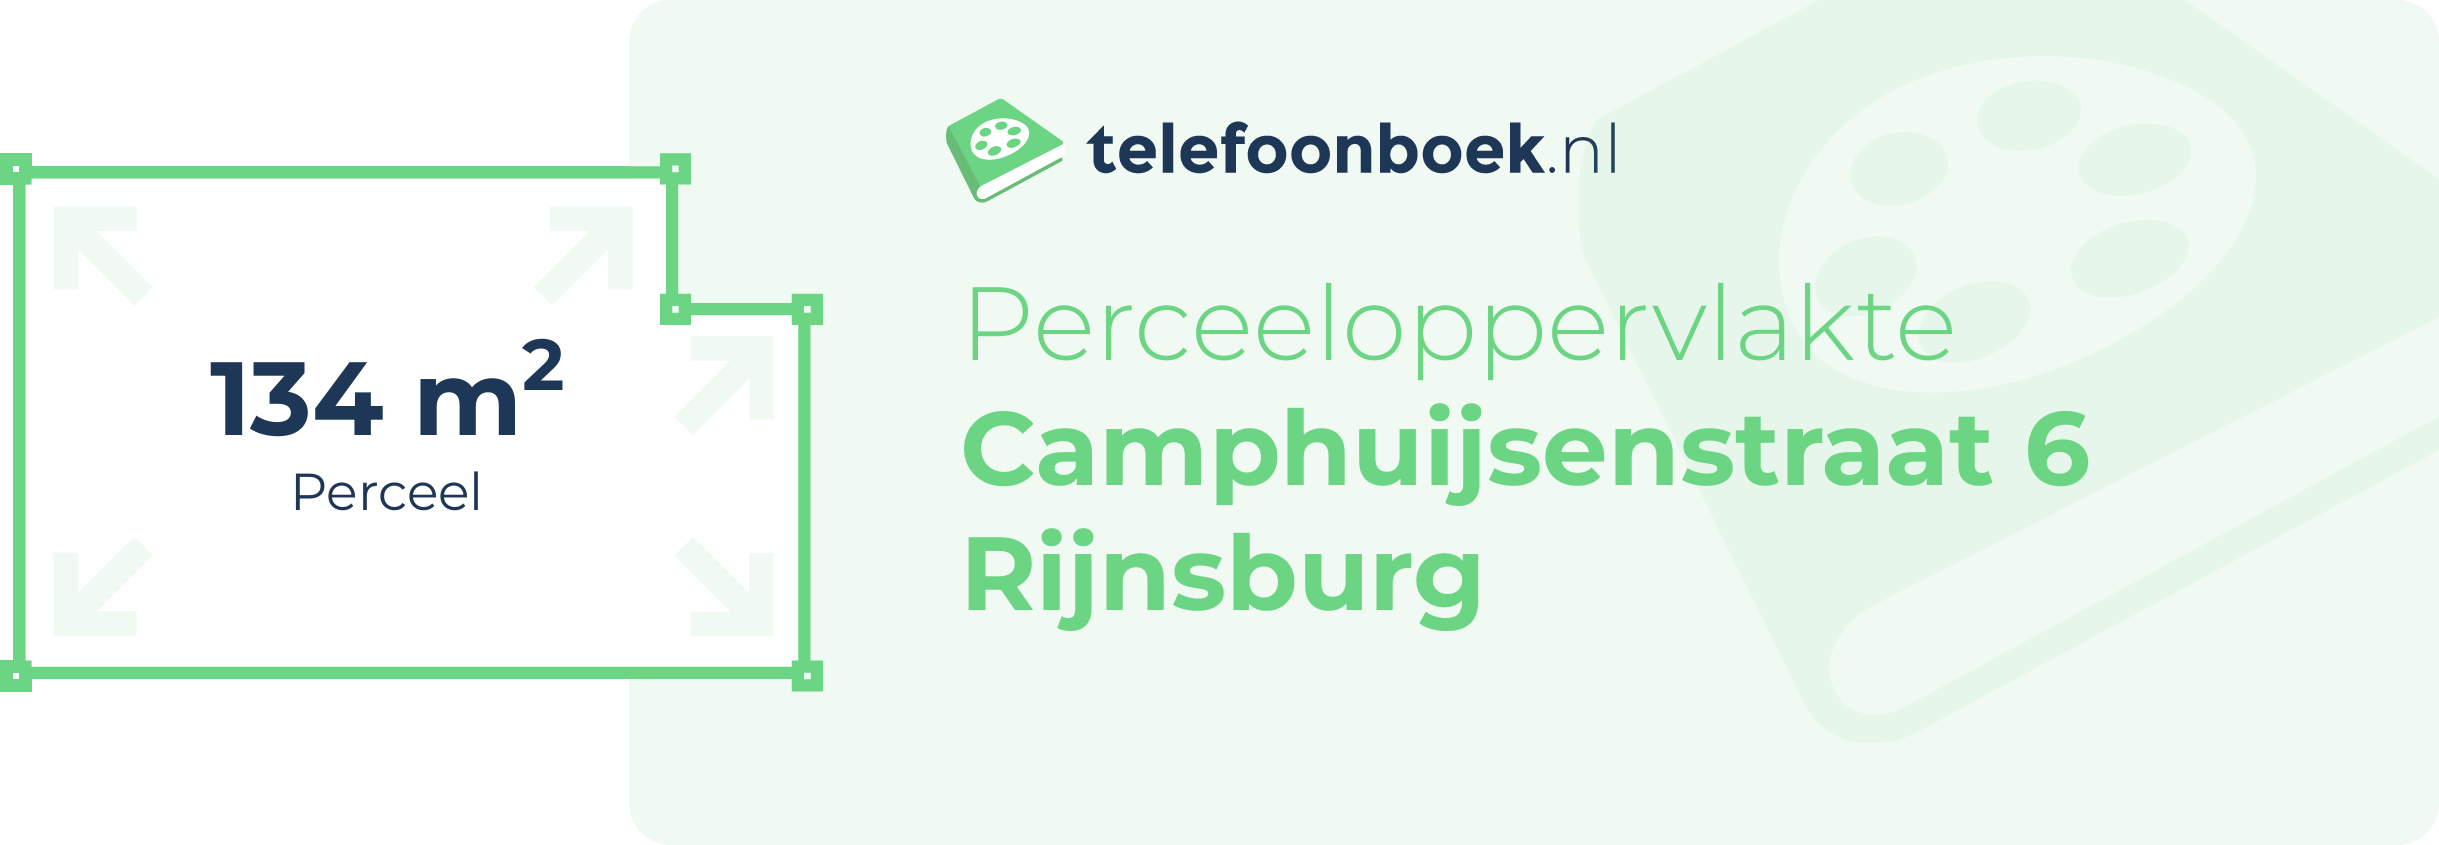 Perceeloppervlakte Camphuijsenstraat 6 Rijnsburg